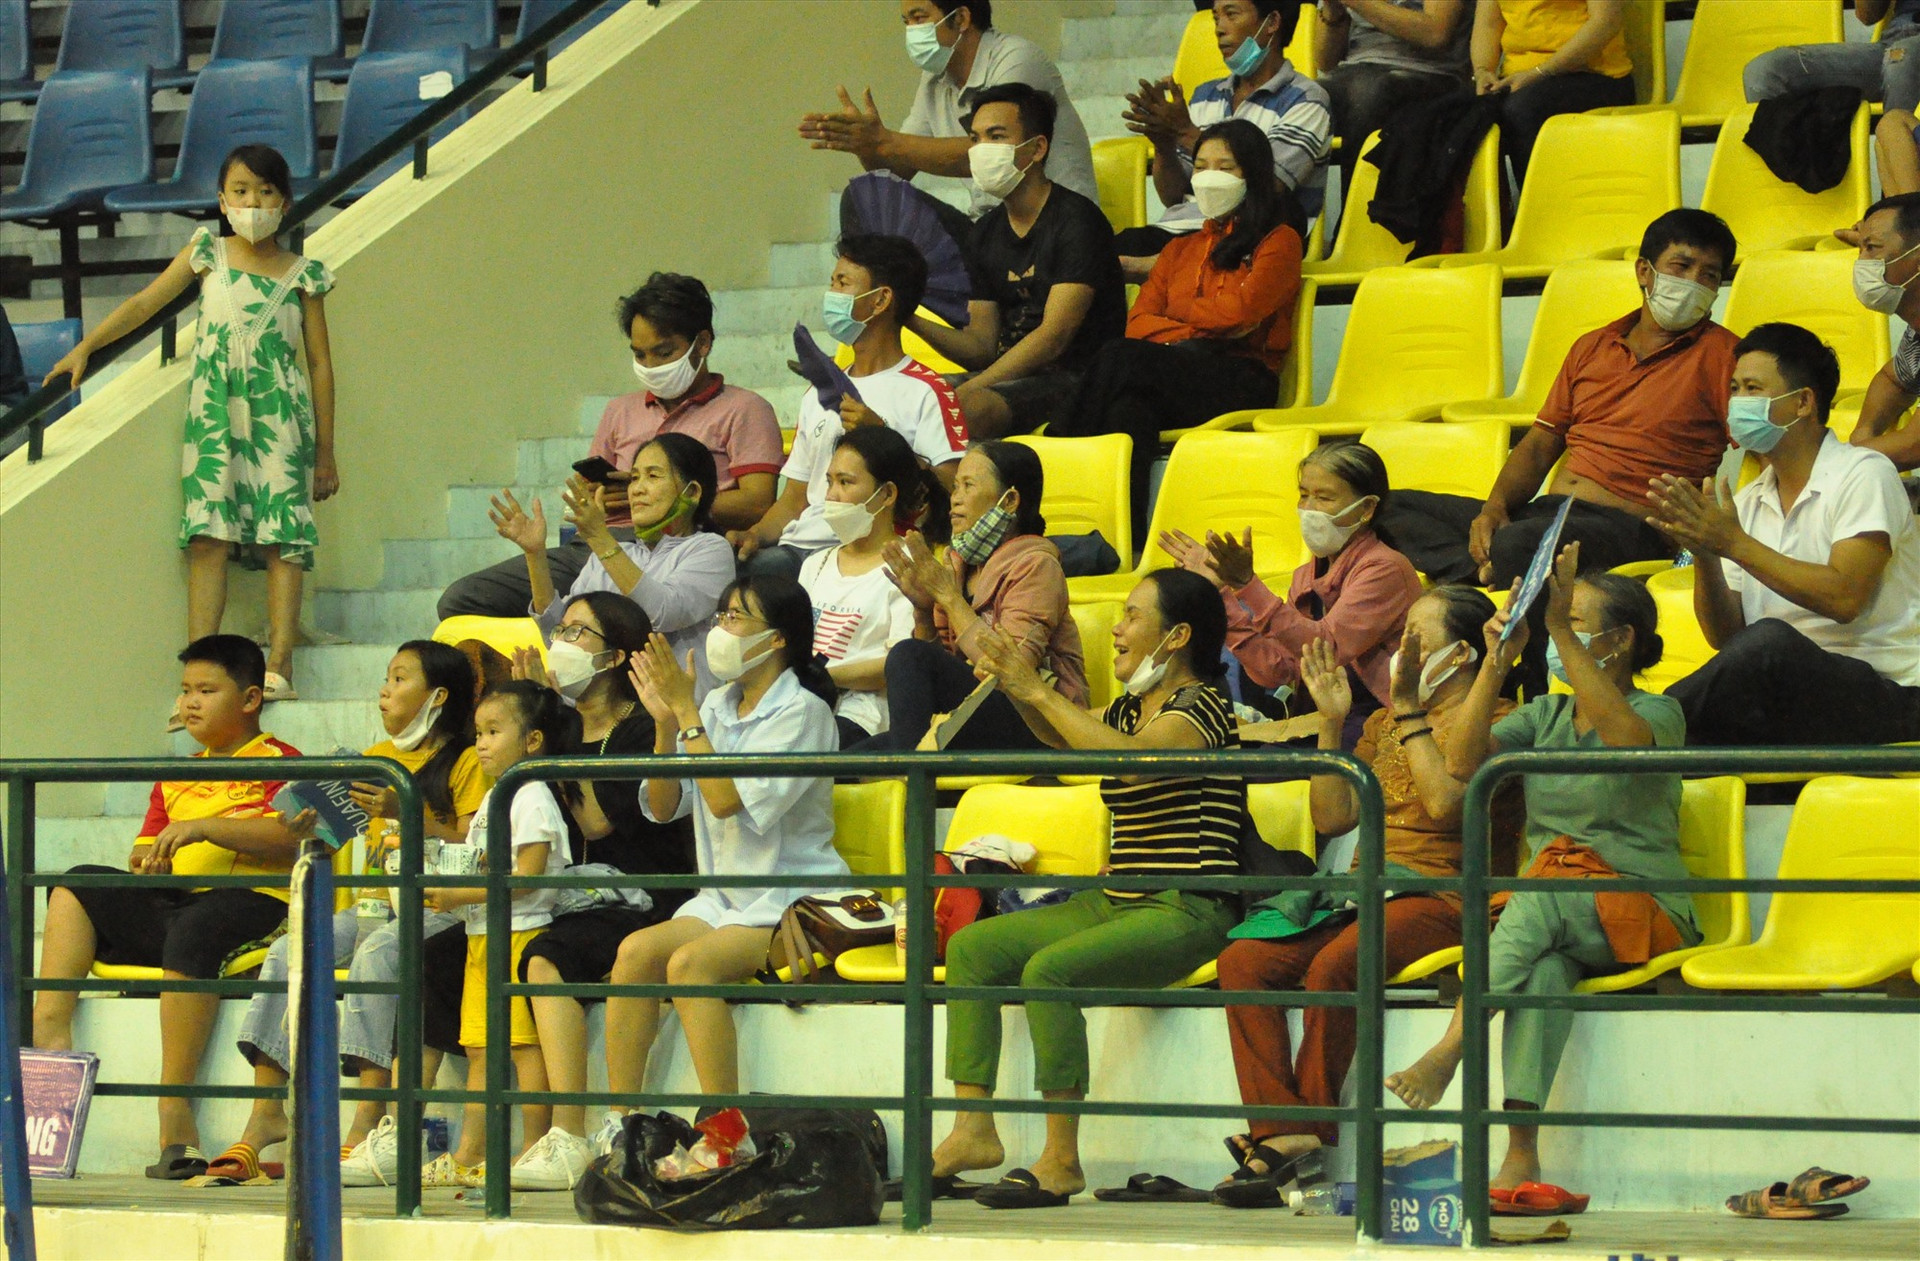 Khán giả Tam Thăng cổ vũ nhiệt tình nhưng vẫn không thể giúp cho các vận động viên trẻ xã nhà giành chiến thắng. Ảnh: T.V